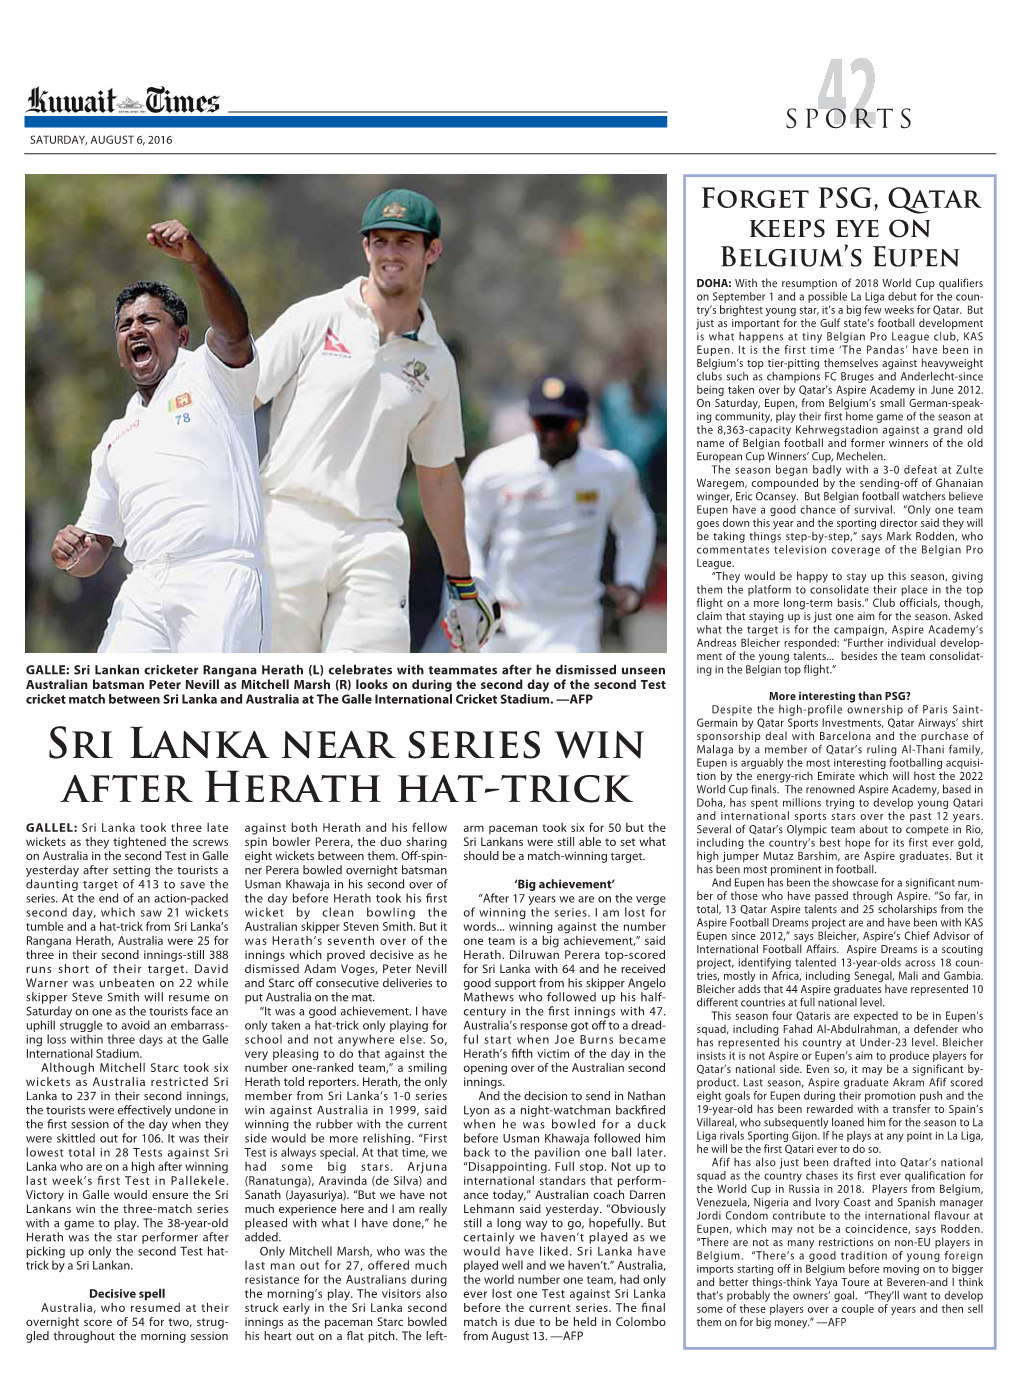 Sri Lanka NEAR Series Win After Herath Hat-Trick